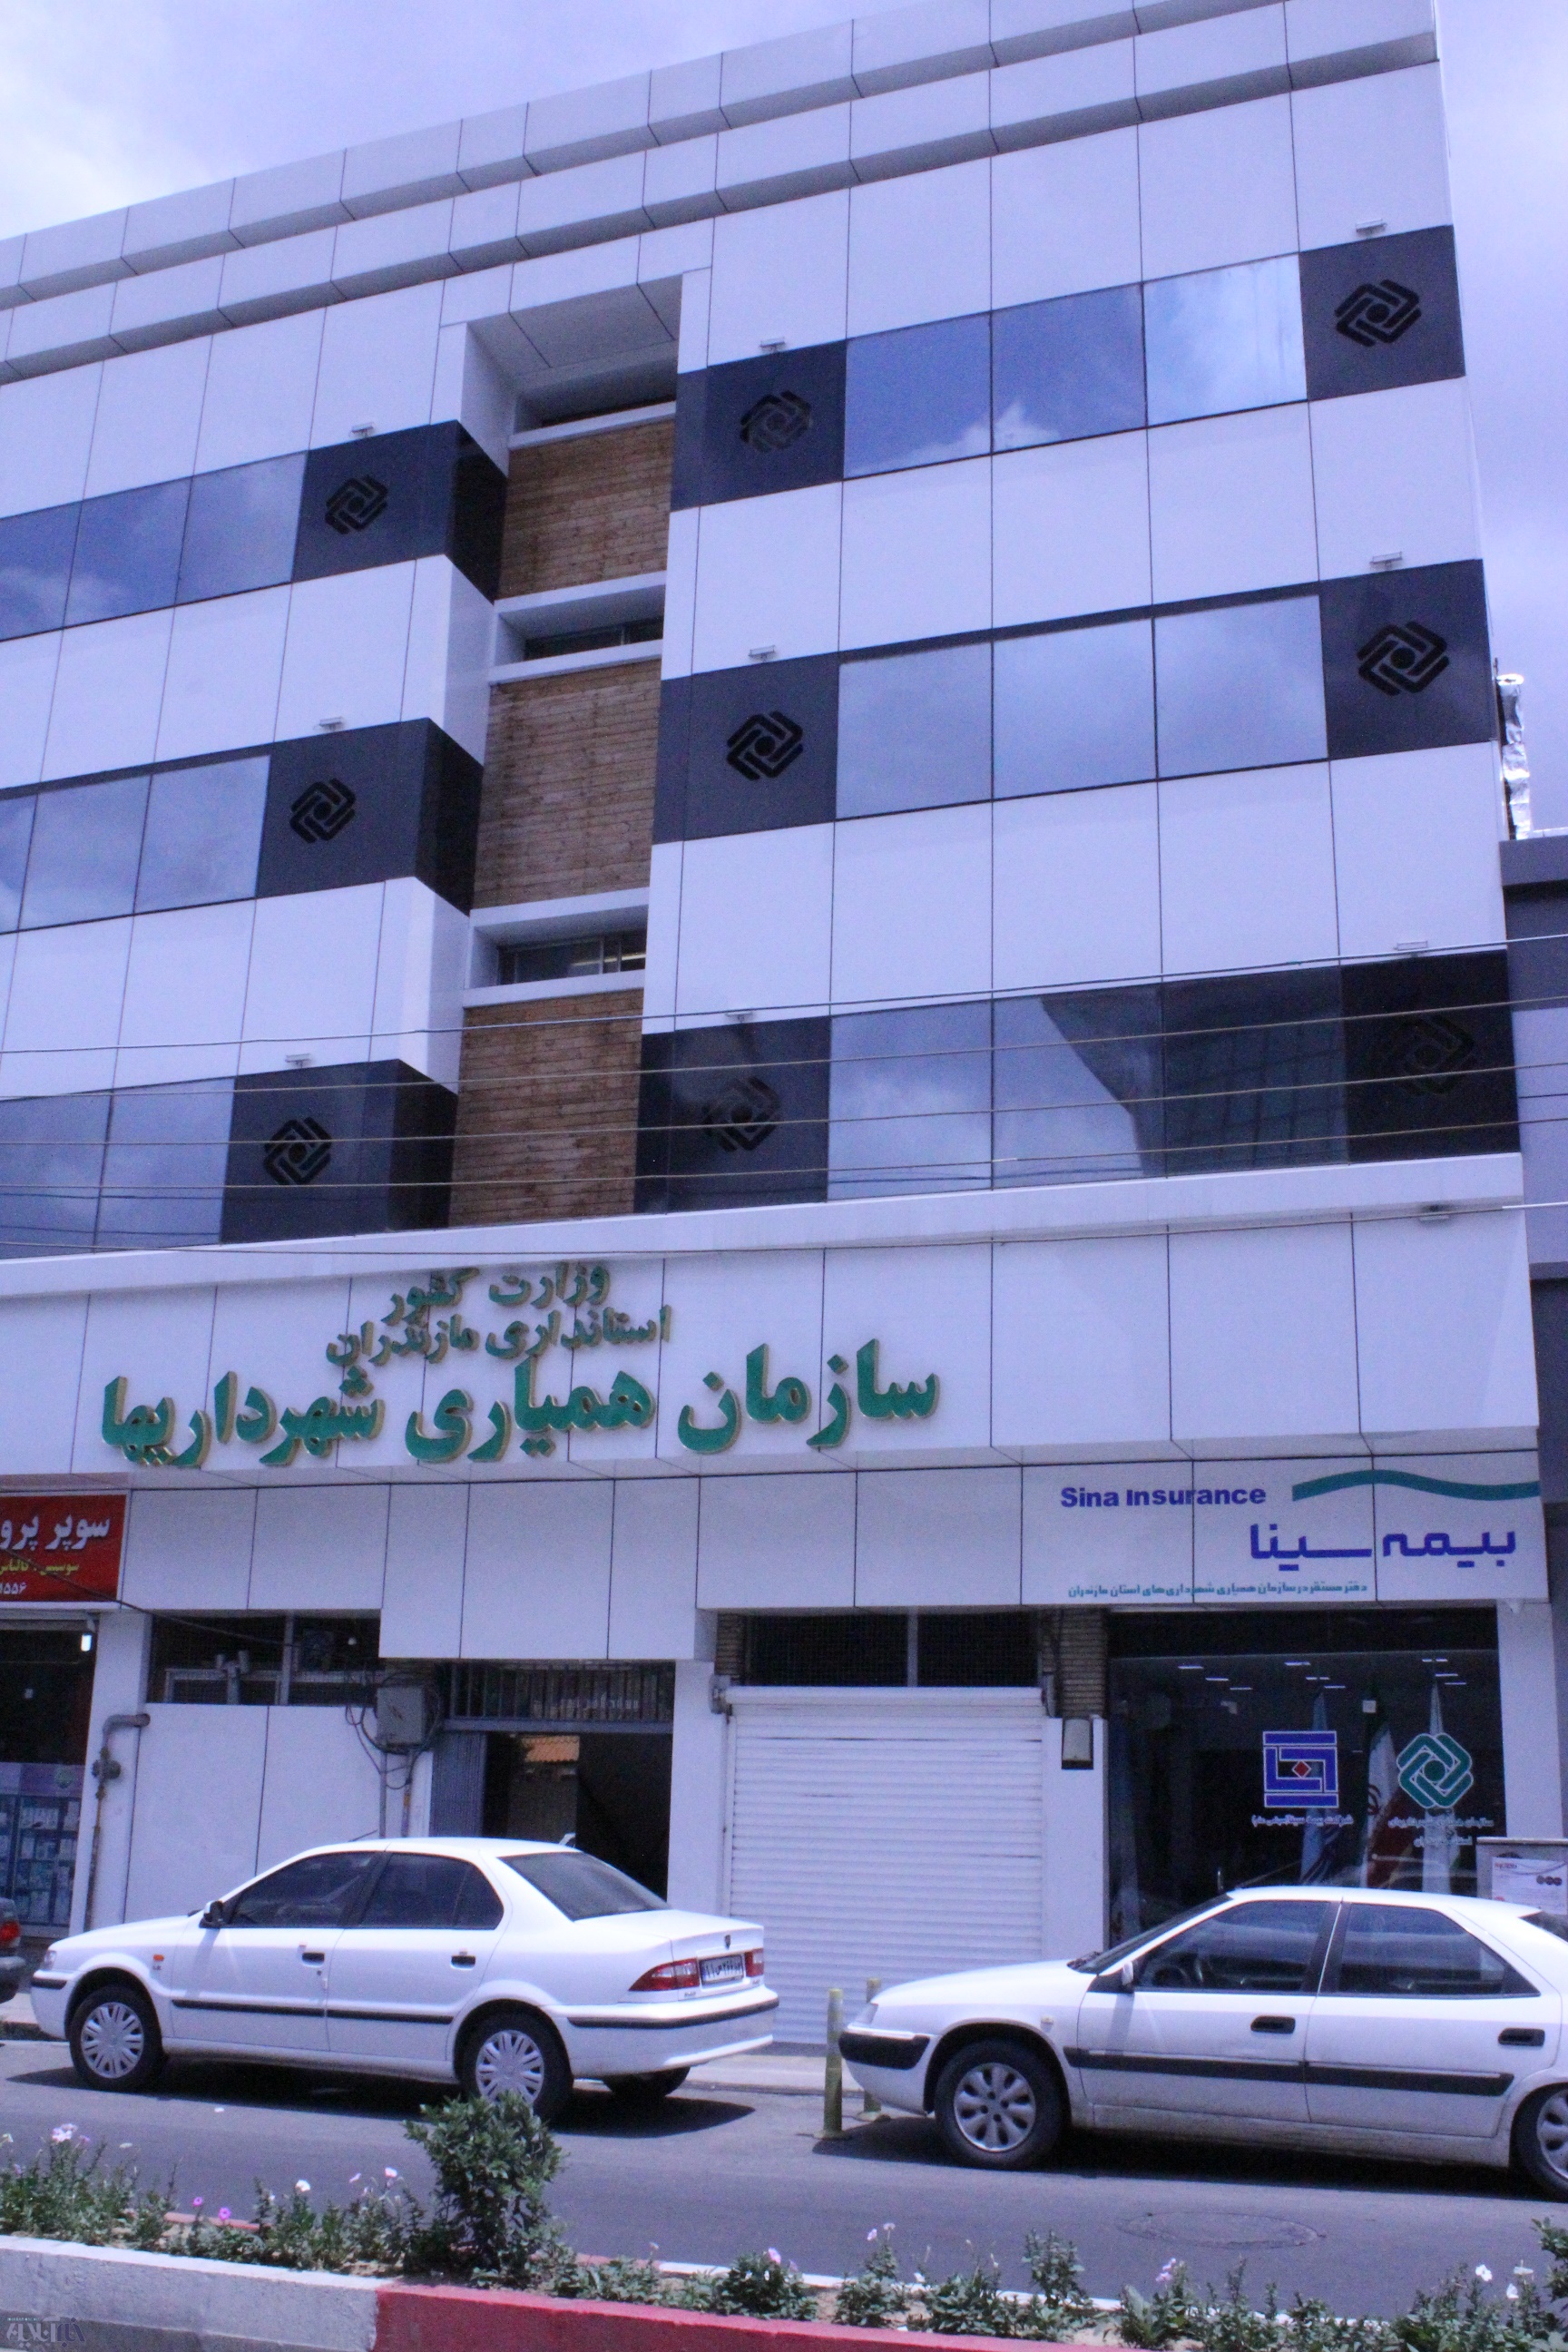  سازمان همیاری شهرداریهای استان مازندران برای انجام انواع خدمات بیمه ای اعلام آمادگی کرد